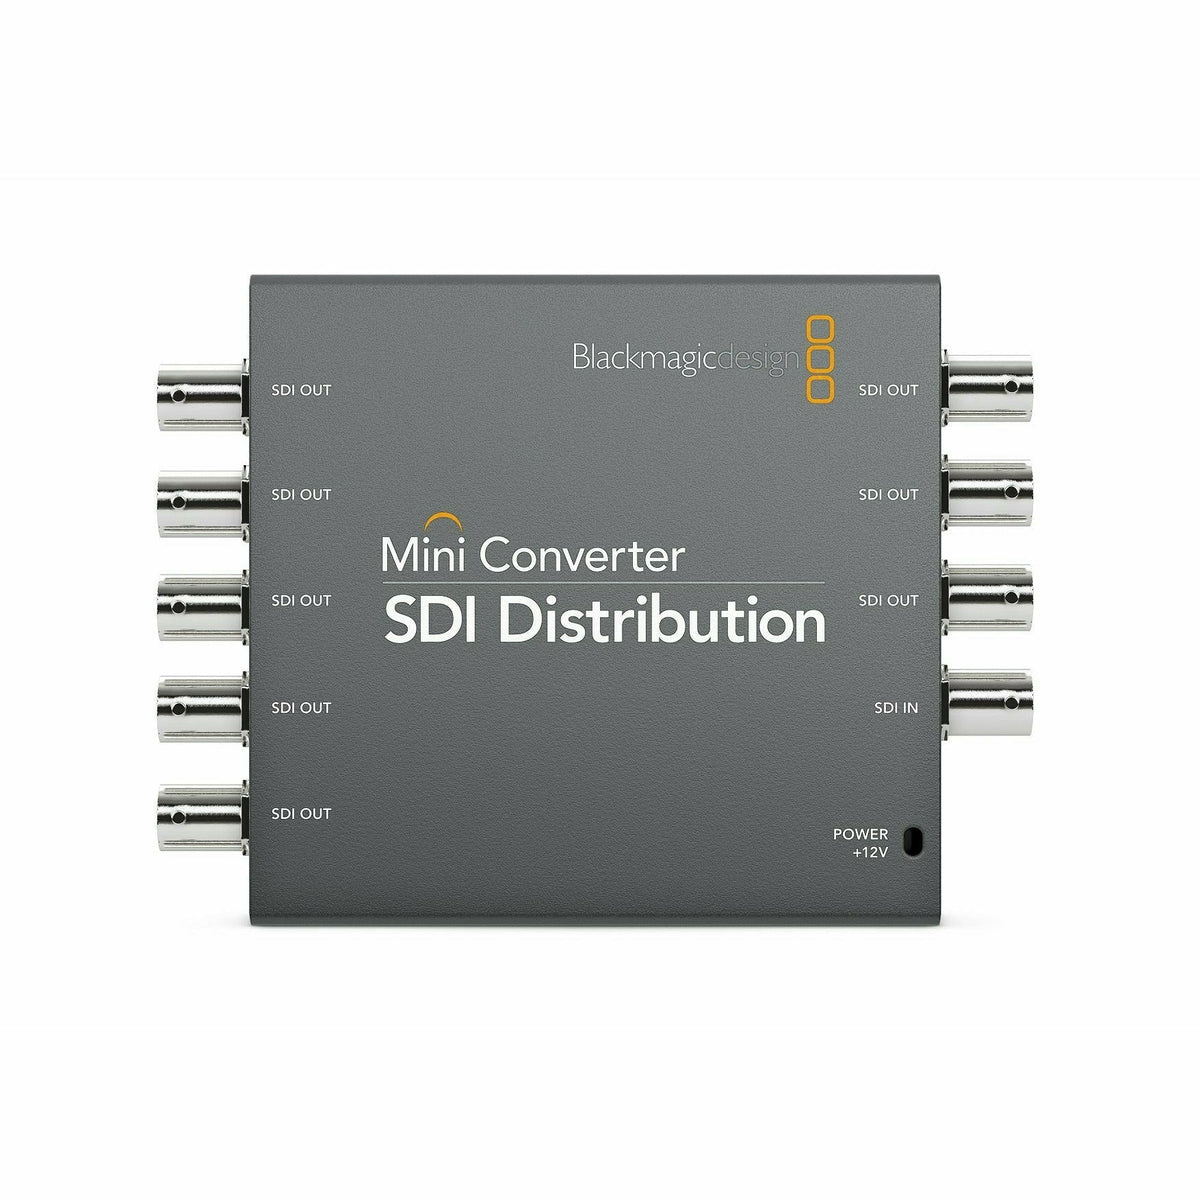 Blackmagic Mini Converter - SDI Distribution - Dragon Image